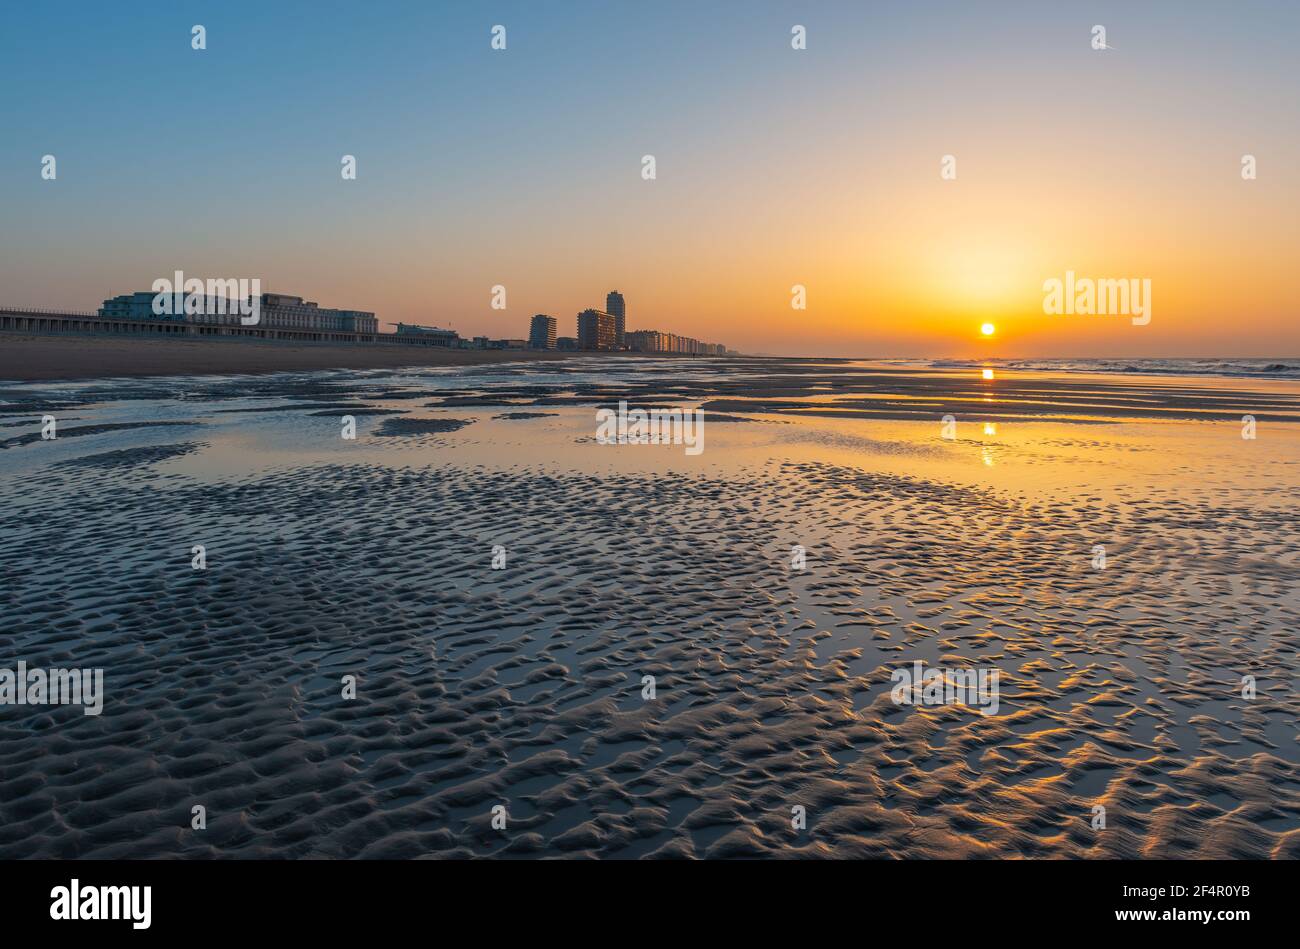 Oostende (Ostende) plage au bord de la mer du Nord au coucher du soleil avec des ondulations de sable, Flandre Occidentale, Belgique. Banque D'Images